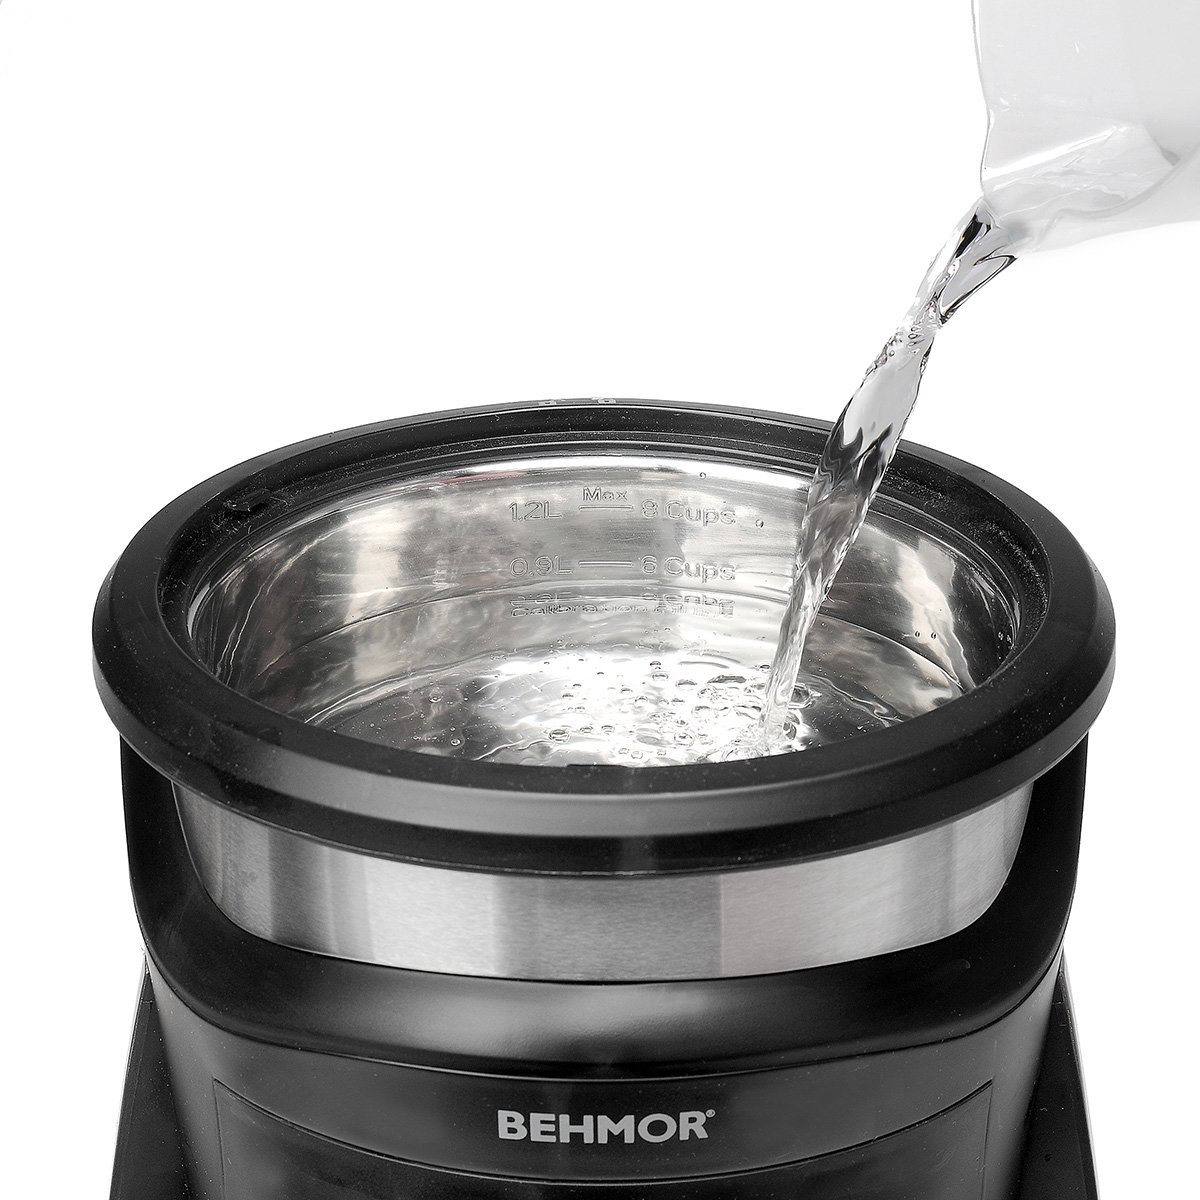 Behmor-Brewer-Smart-Coffee-Maker-3